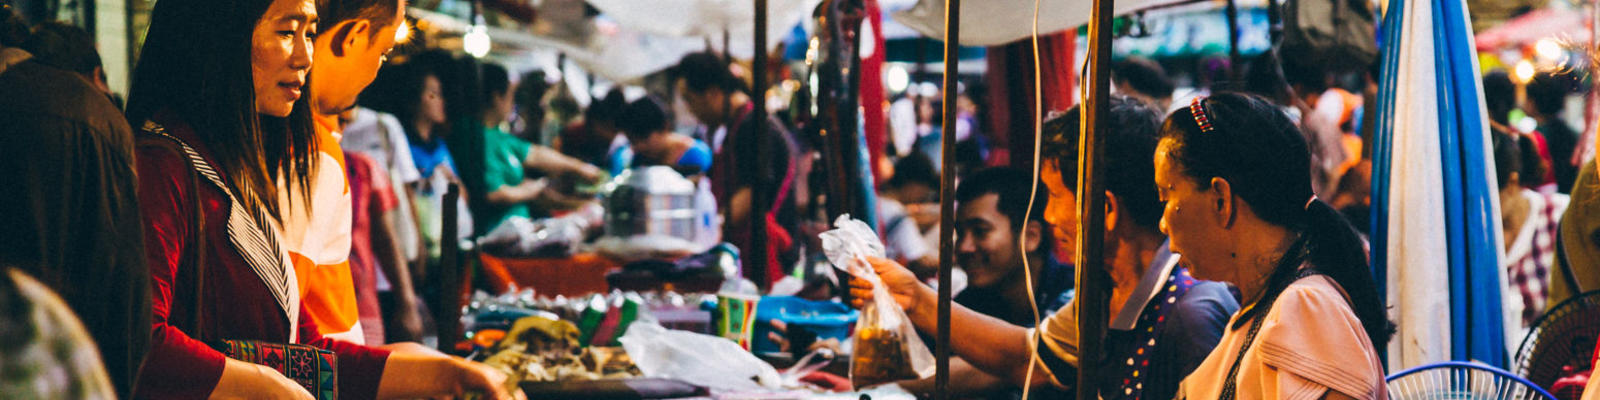 Thai street food vendor